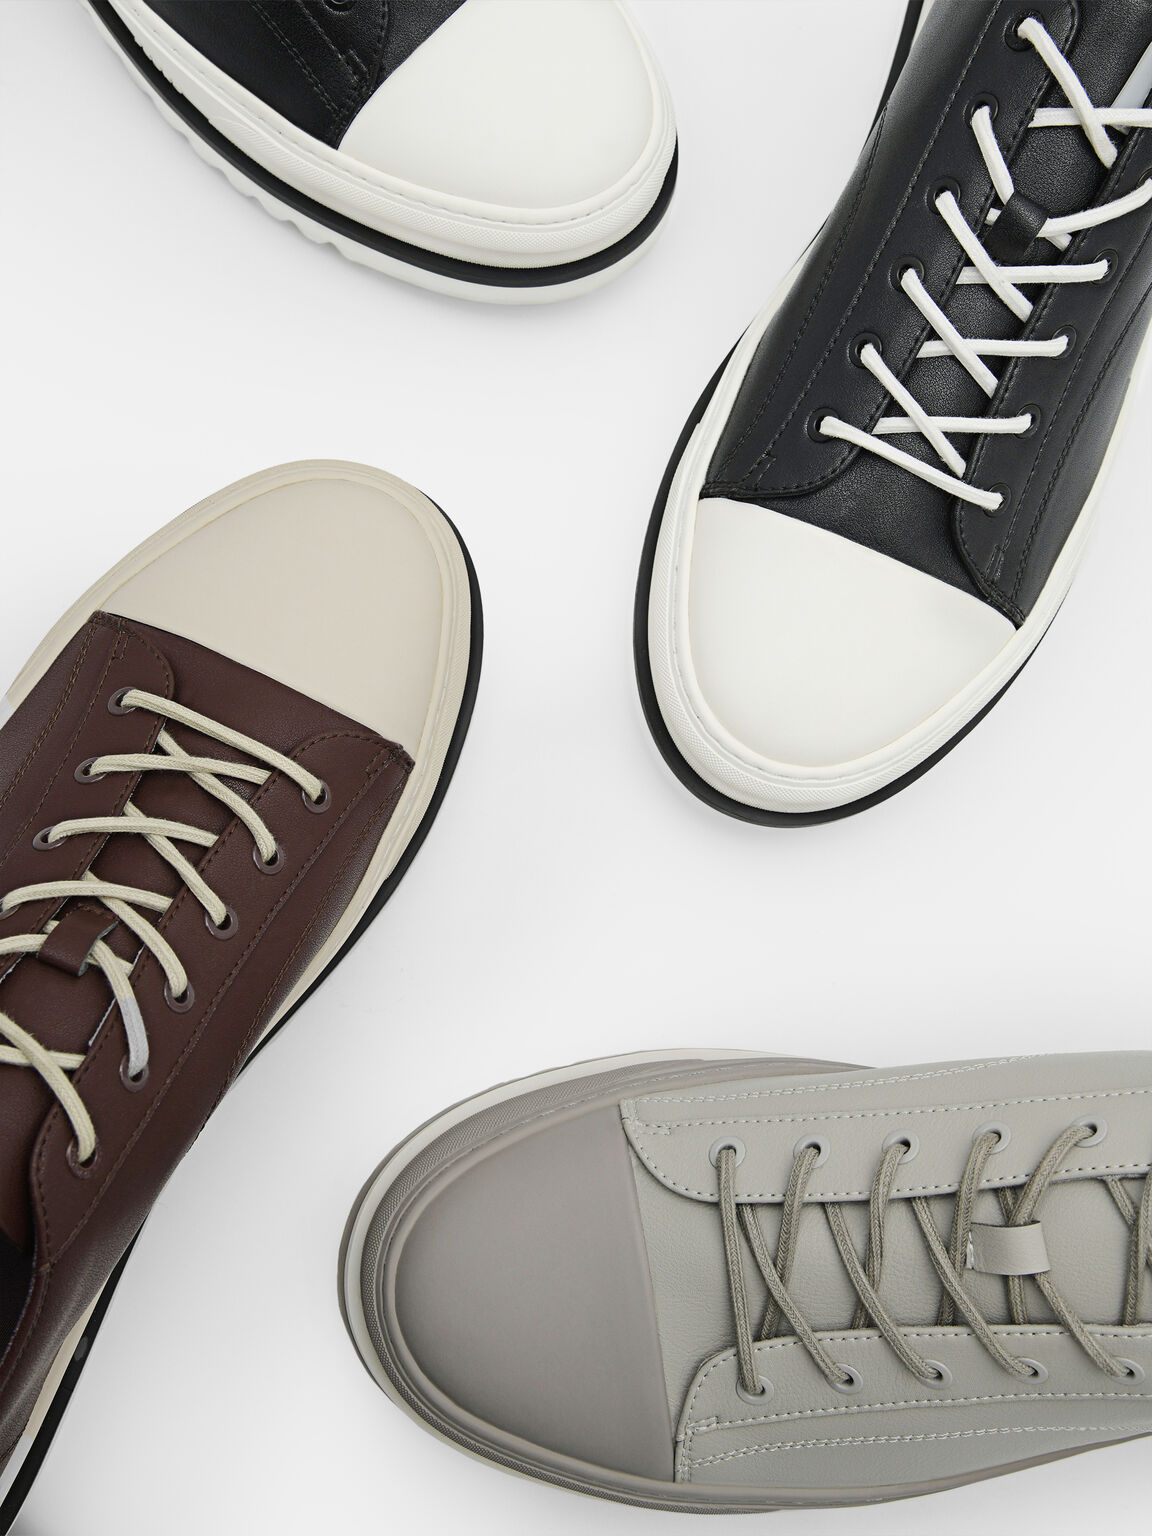 Men's Owen Court Sneakers, Light Grey, hi-res